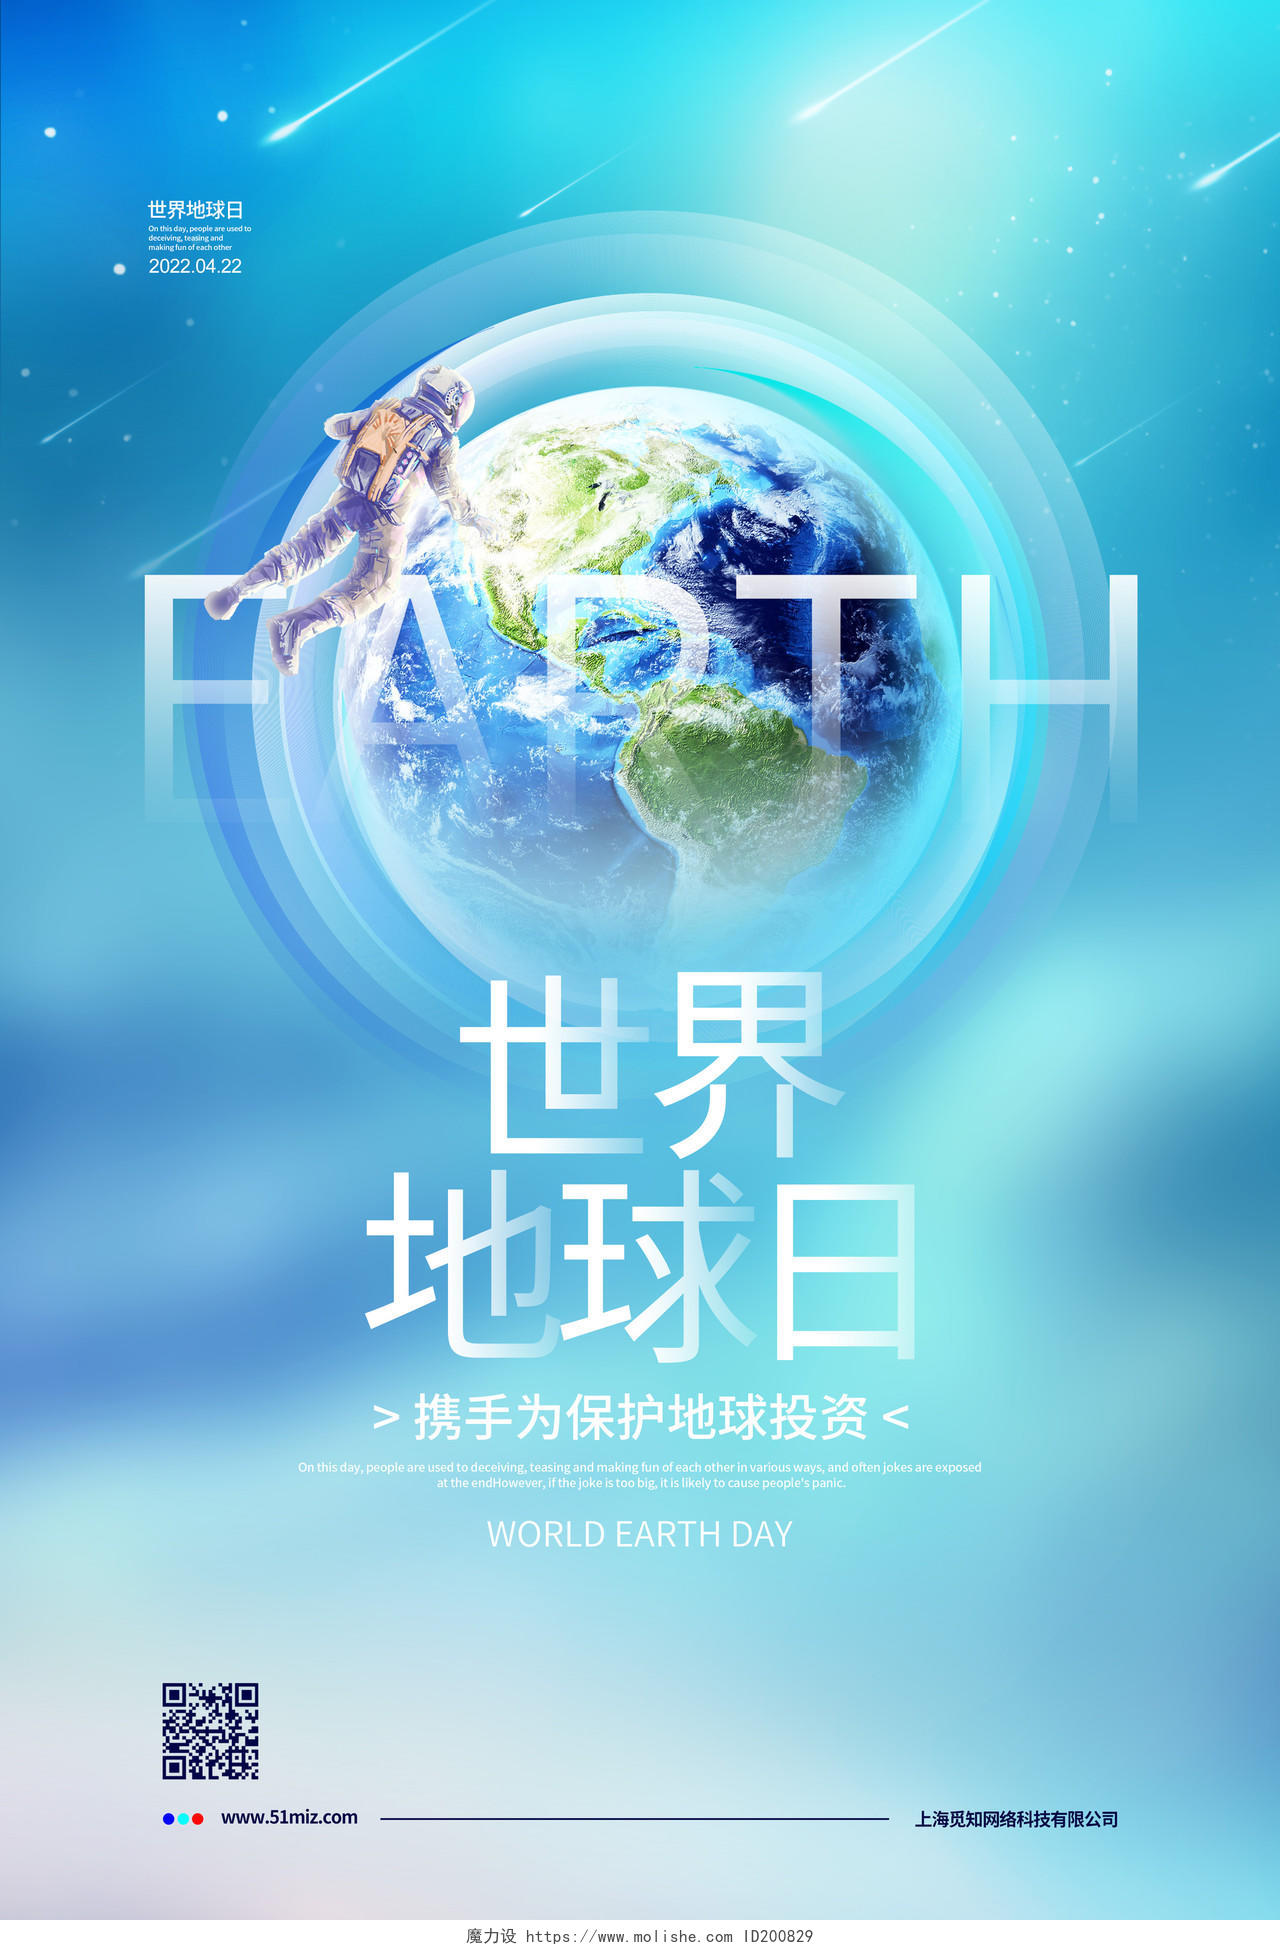 创意简约4月22日世界地球日宣传海报设计